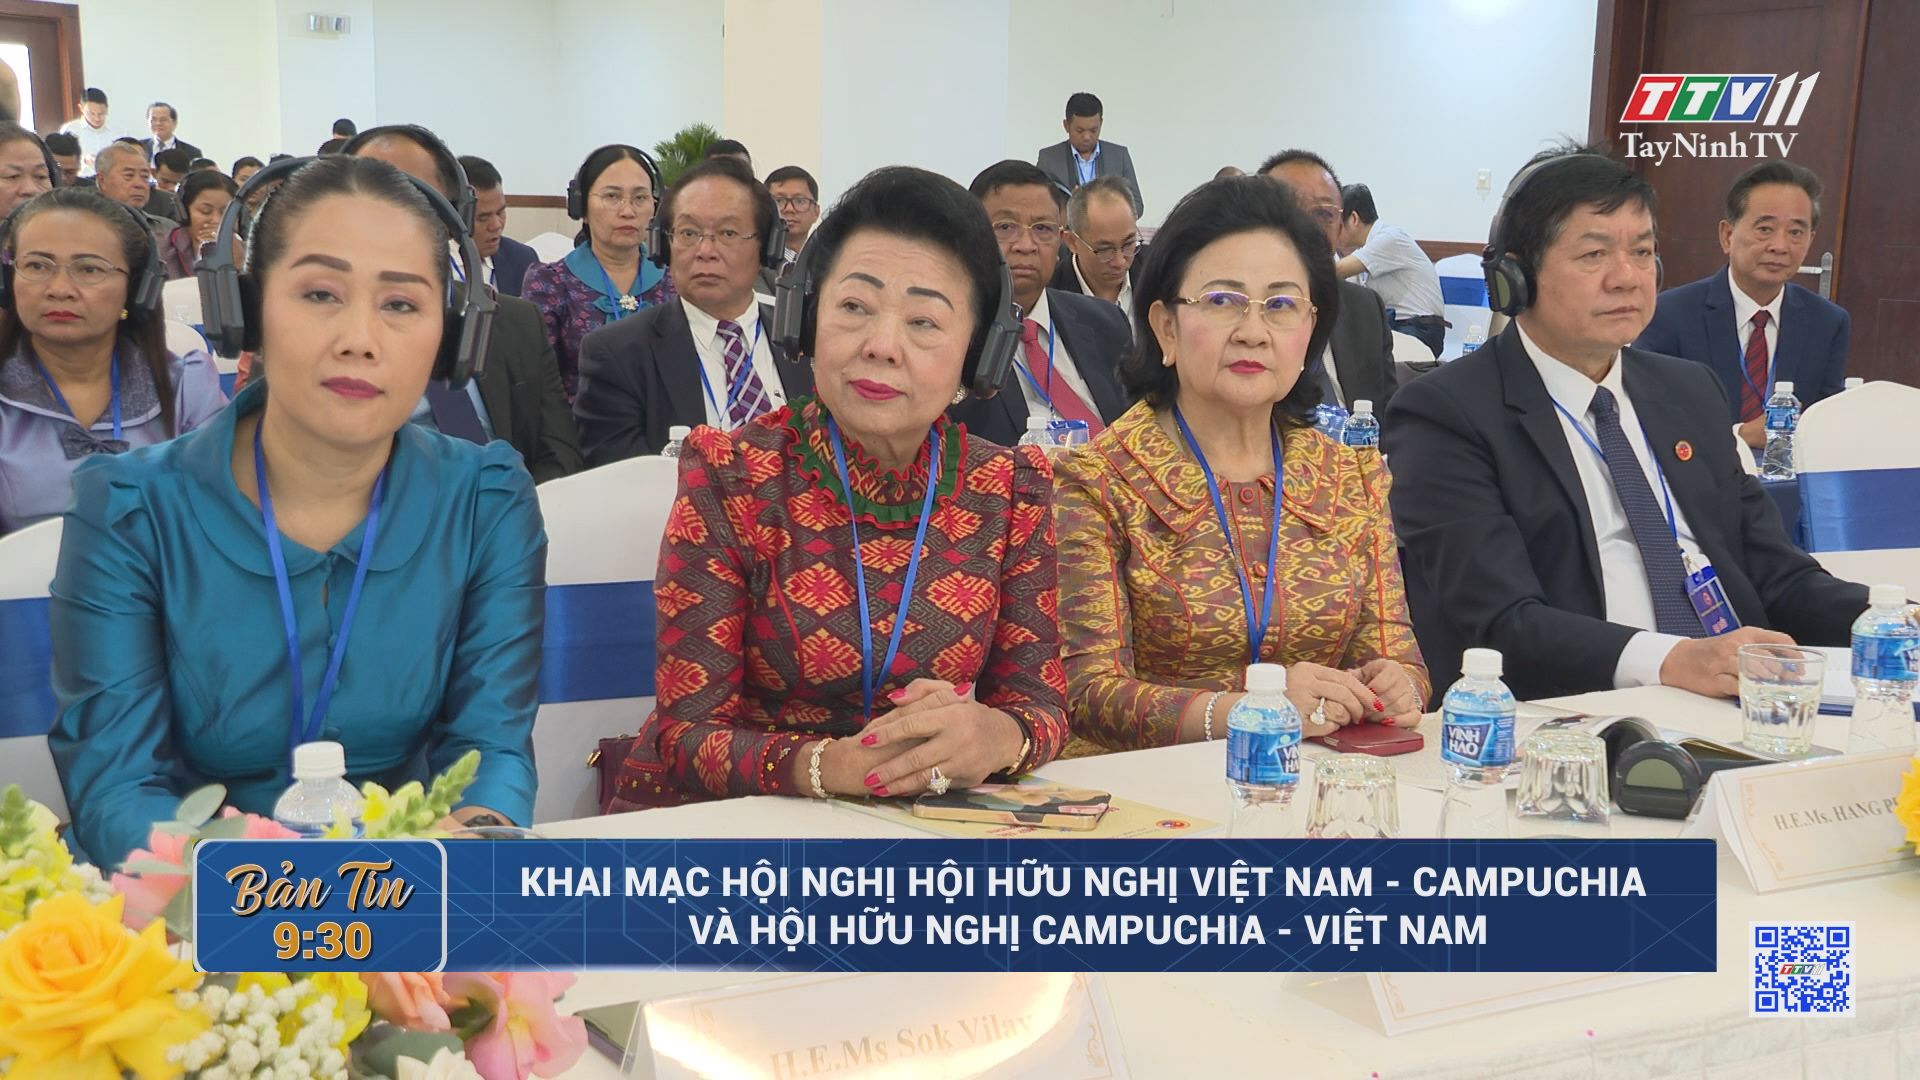 Khai mạc Hội nghị Hội hữu nghị Việt Nam - Campuchia và Hội hữu nghị Campuchia - Việt Nam | TayNinhTV